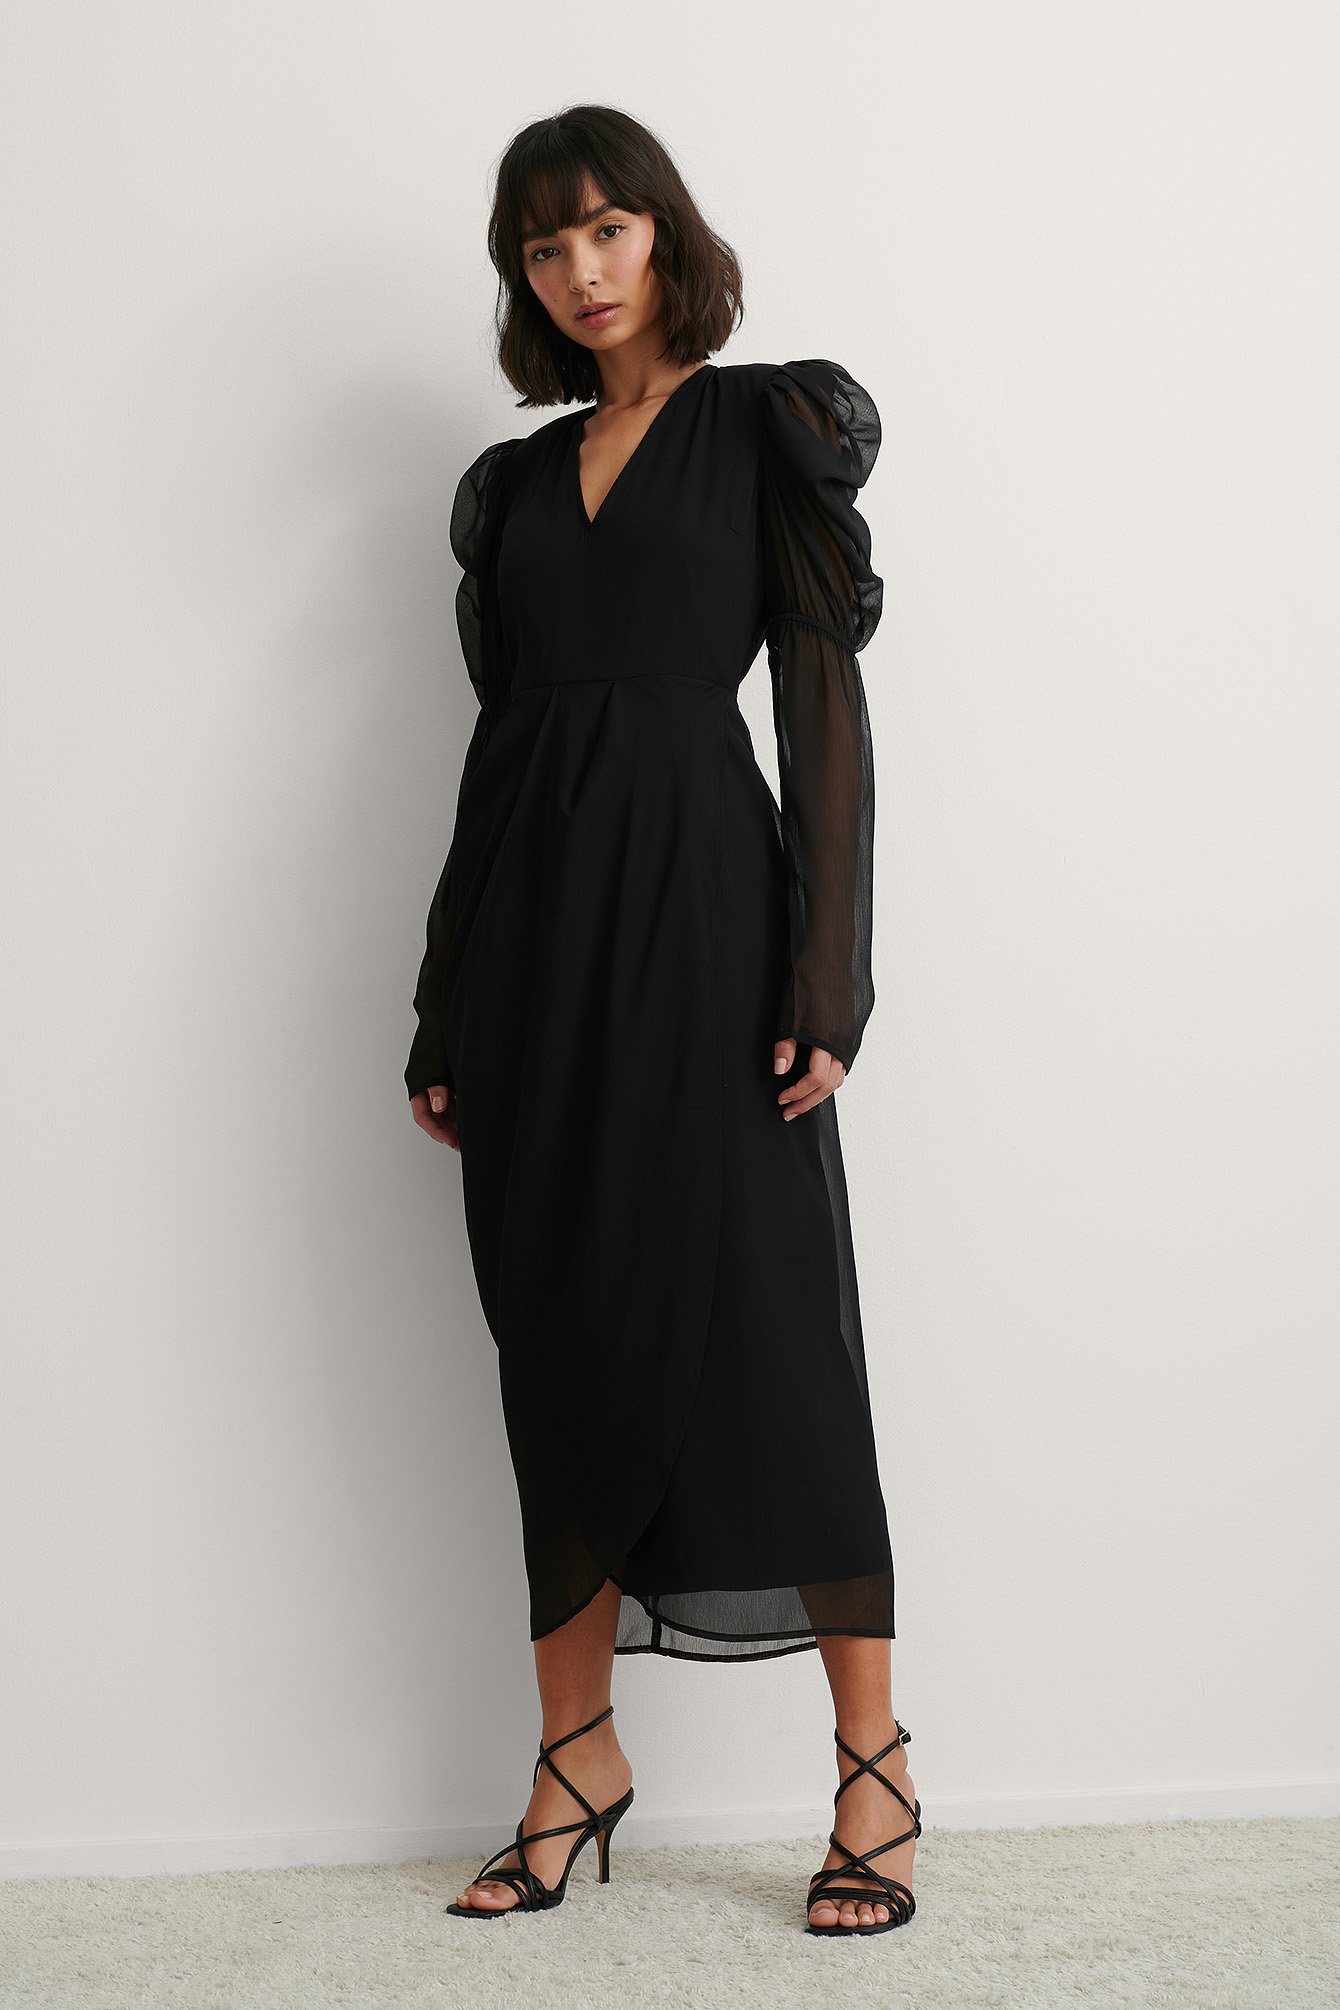 Black Kleid Mit Gepolsterten Schultern